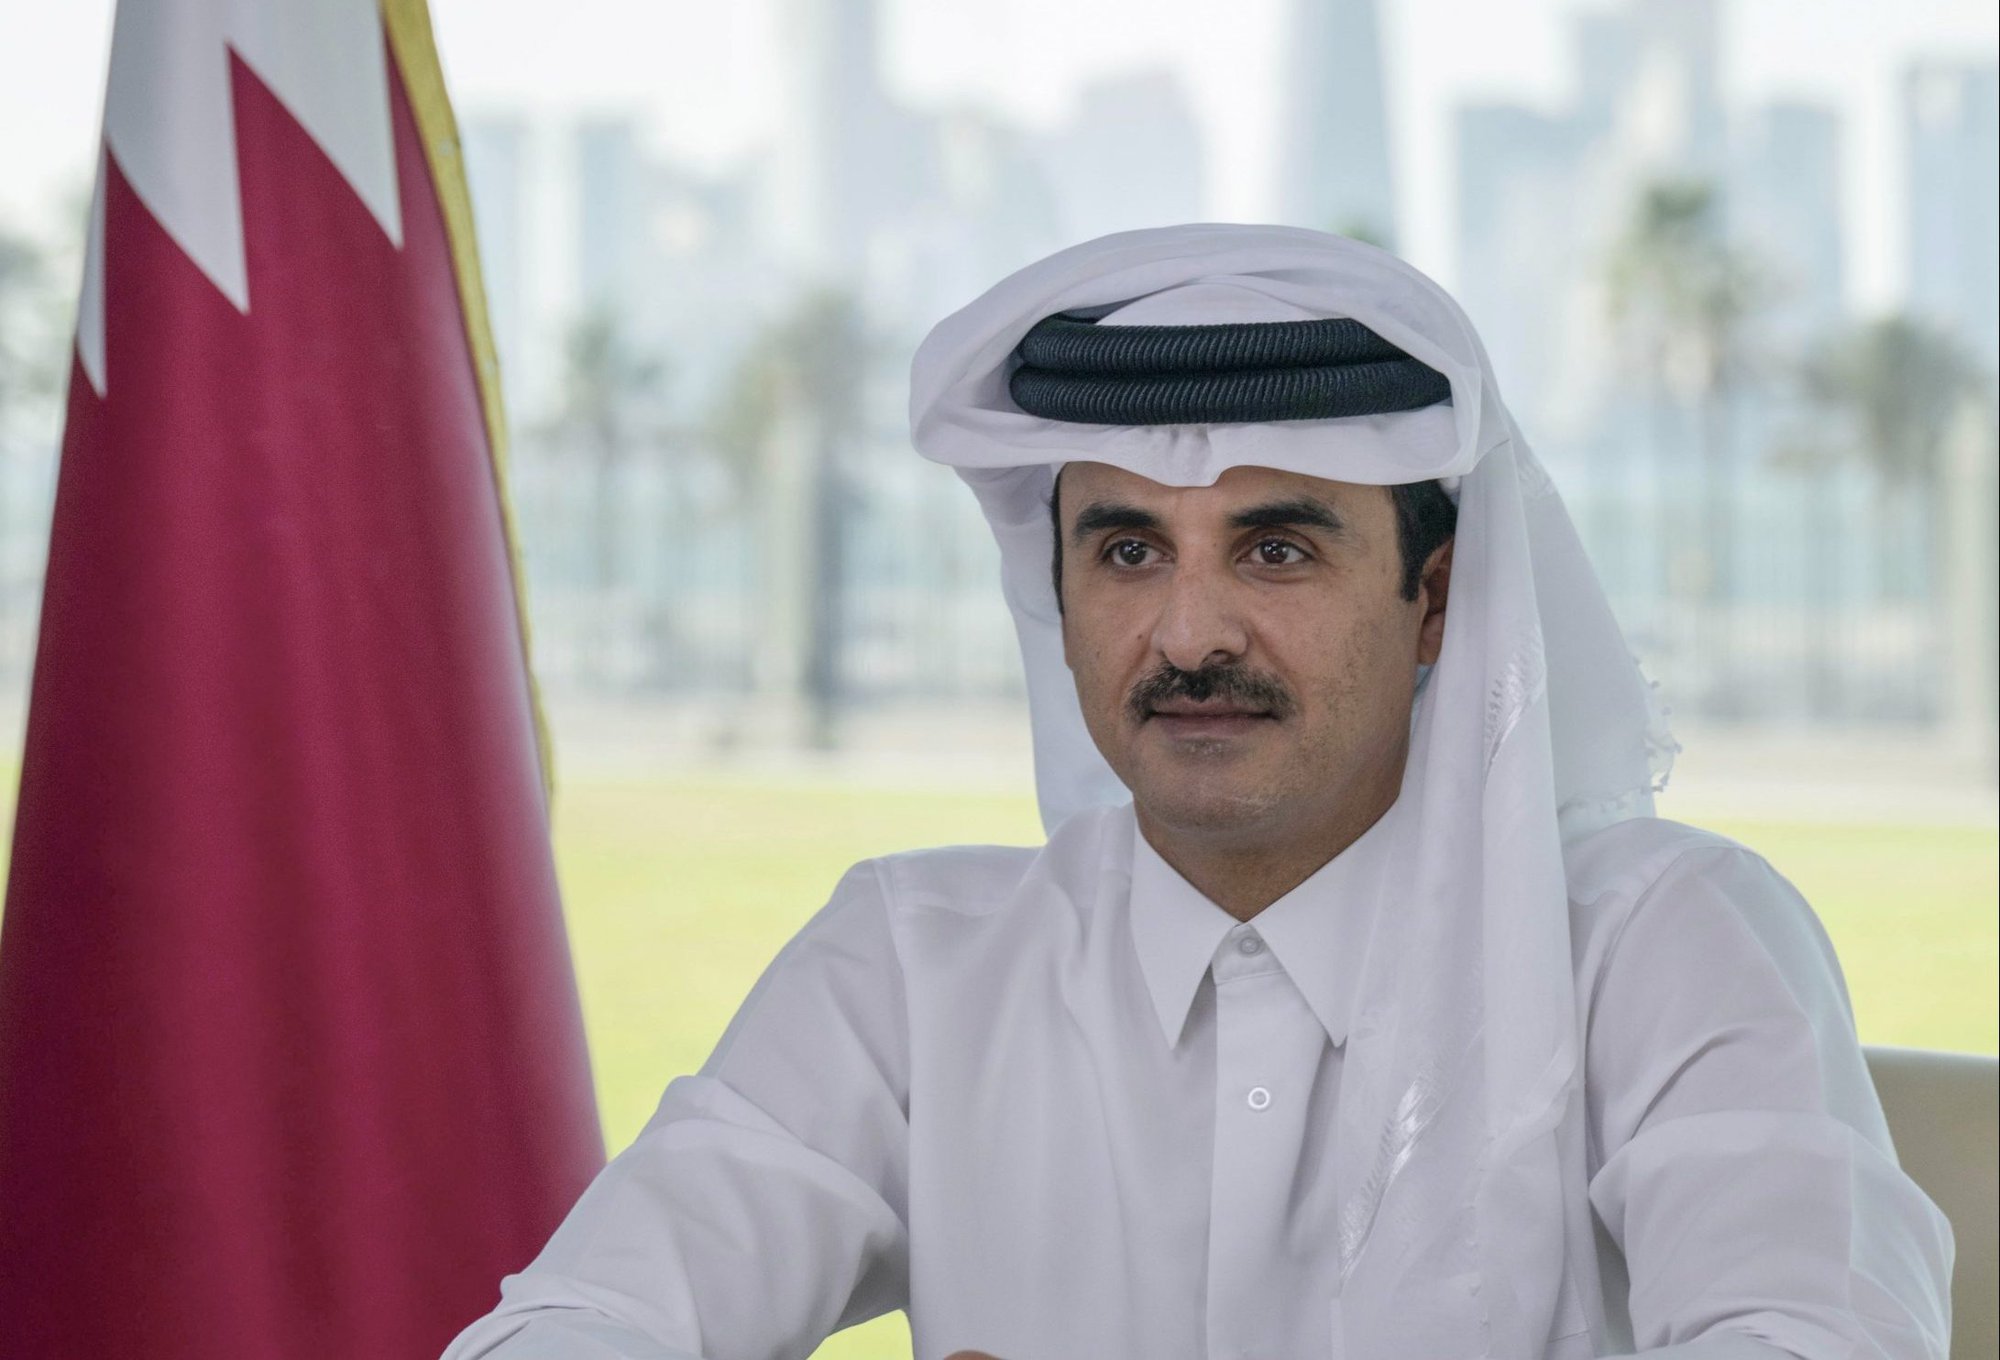 Vị vua đem World Cup 2022 về cho Qatar: Quân chủ tại vị trẻ nhất thế giới, bị “chọn” làm vua sau khi anh trai bỏ ngôi thái tử - Ảnh 1.